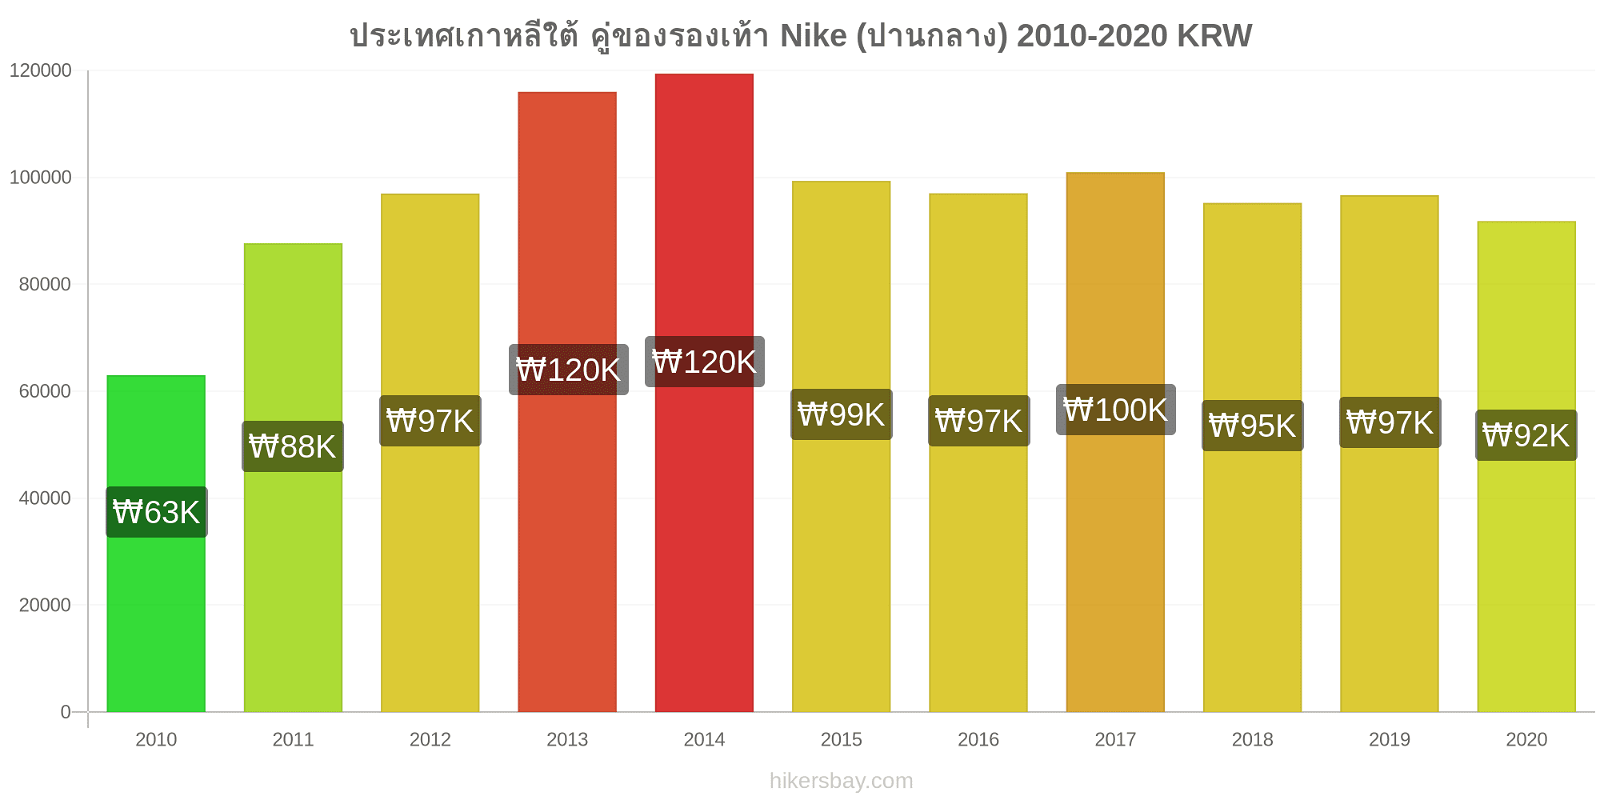 ประเทศเกาหลีใต้ การเปลี่ยนแปลงราคา คู่ของรองเท้า Nike (ปานกลาง) hikersbay.com